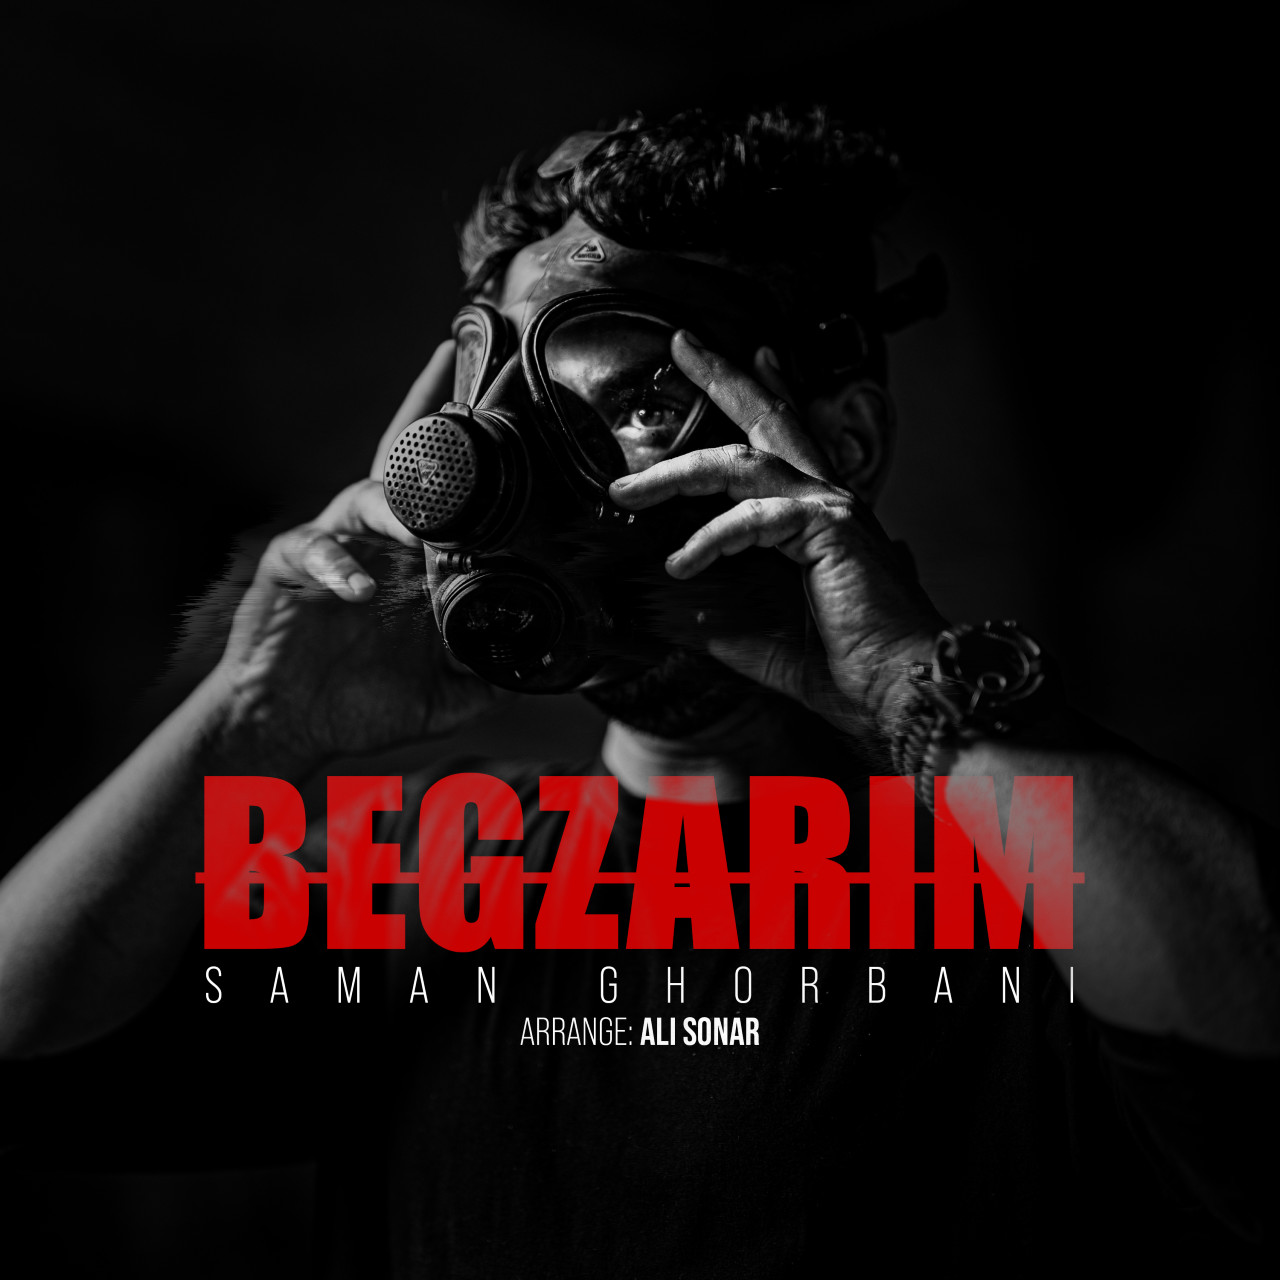 Saman Ghorbani - Begzarim